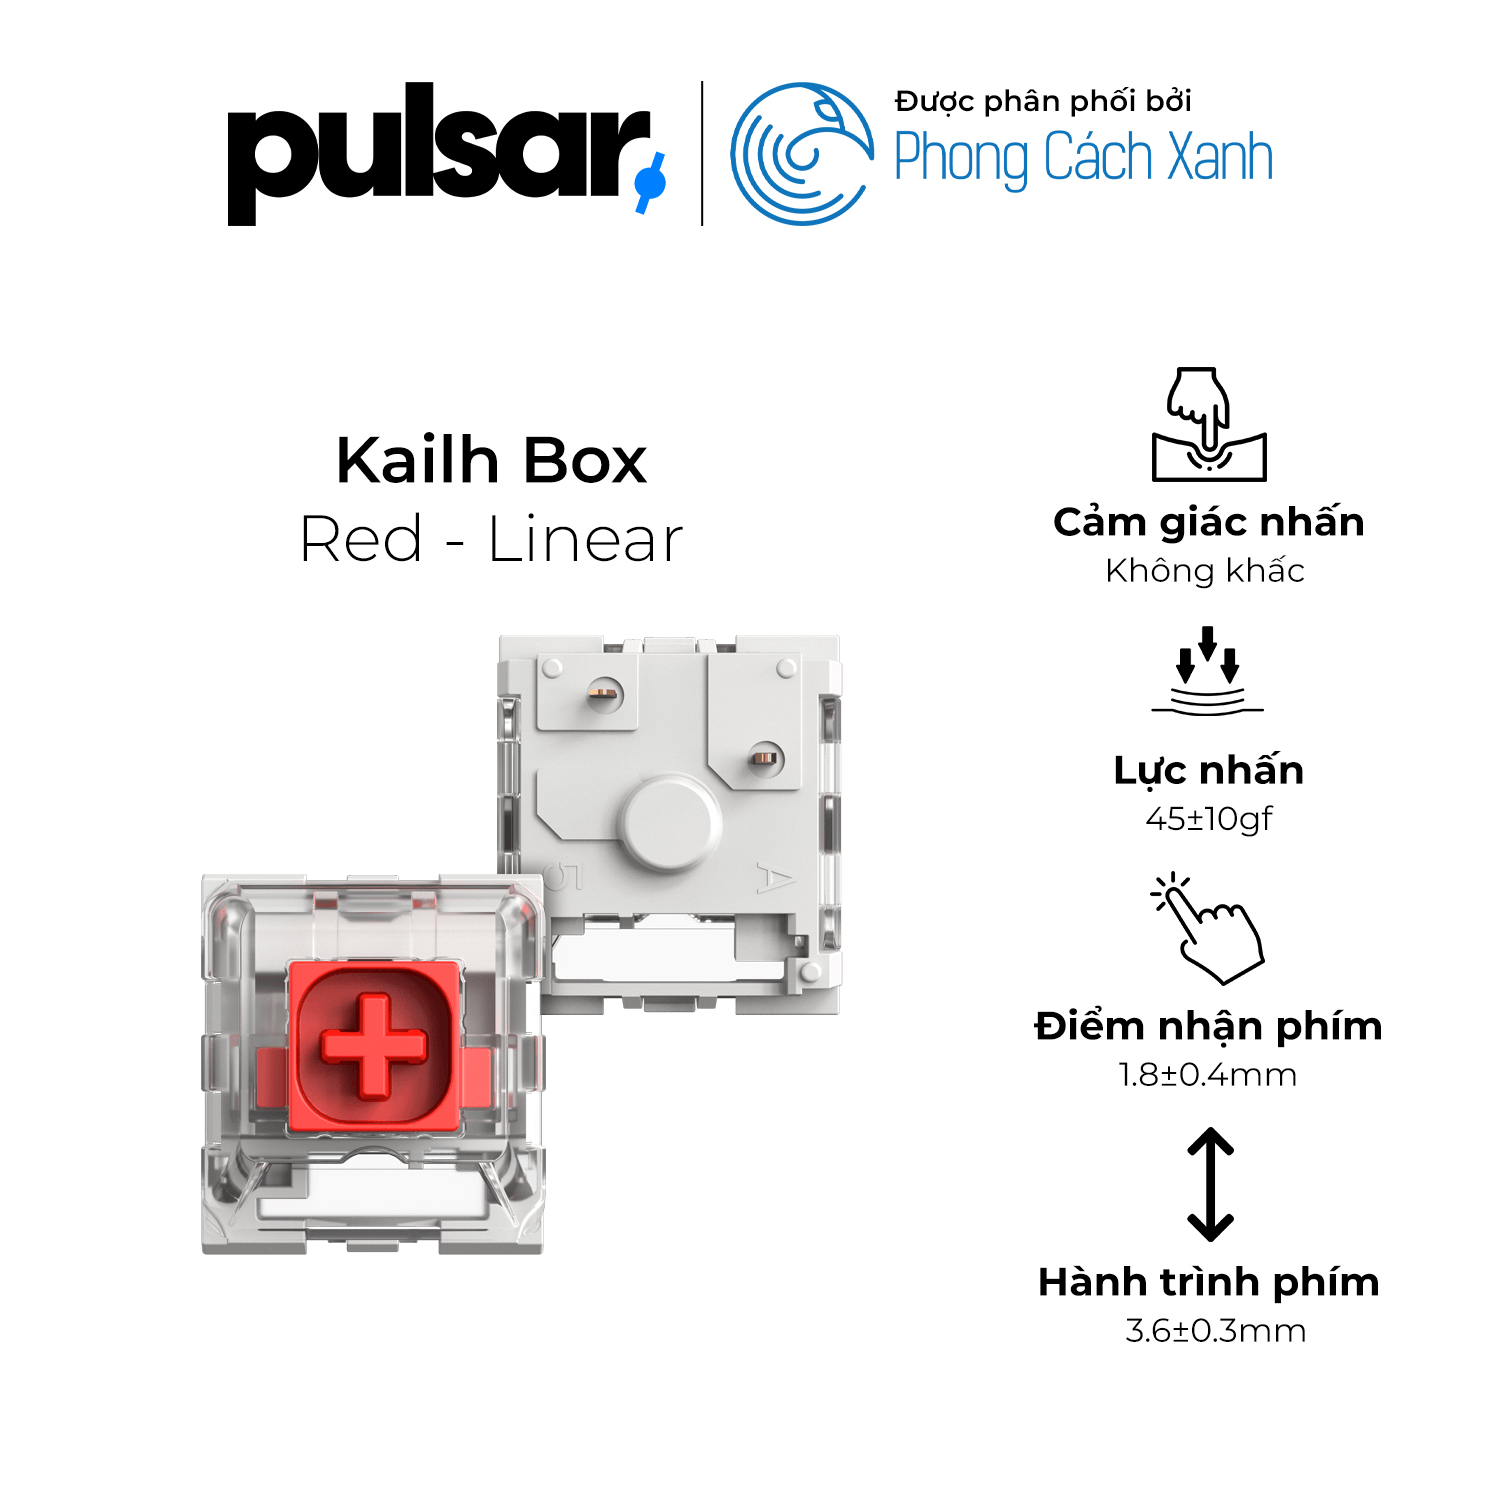 Switch cơ Pulsar - Kailh Box (gói 90) - Hàng Chính Hãng